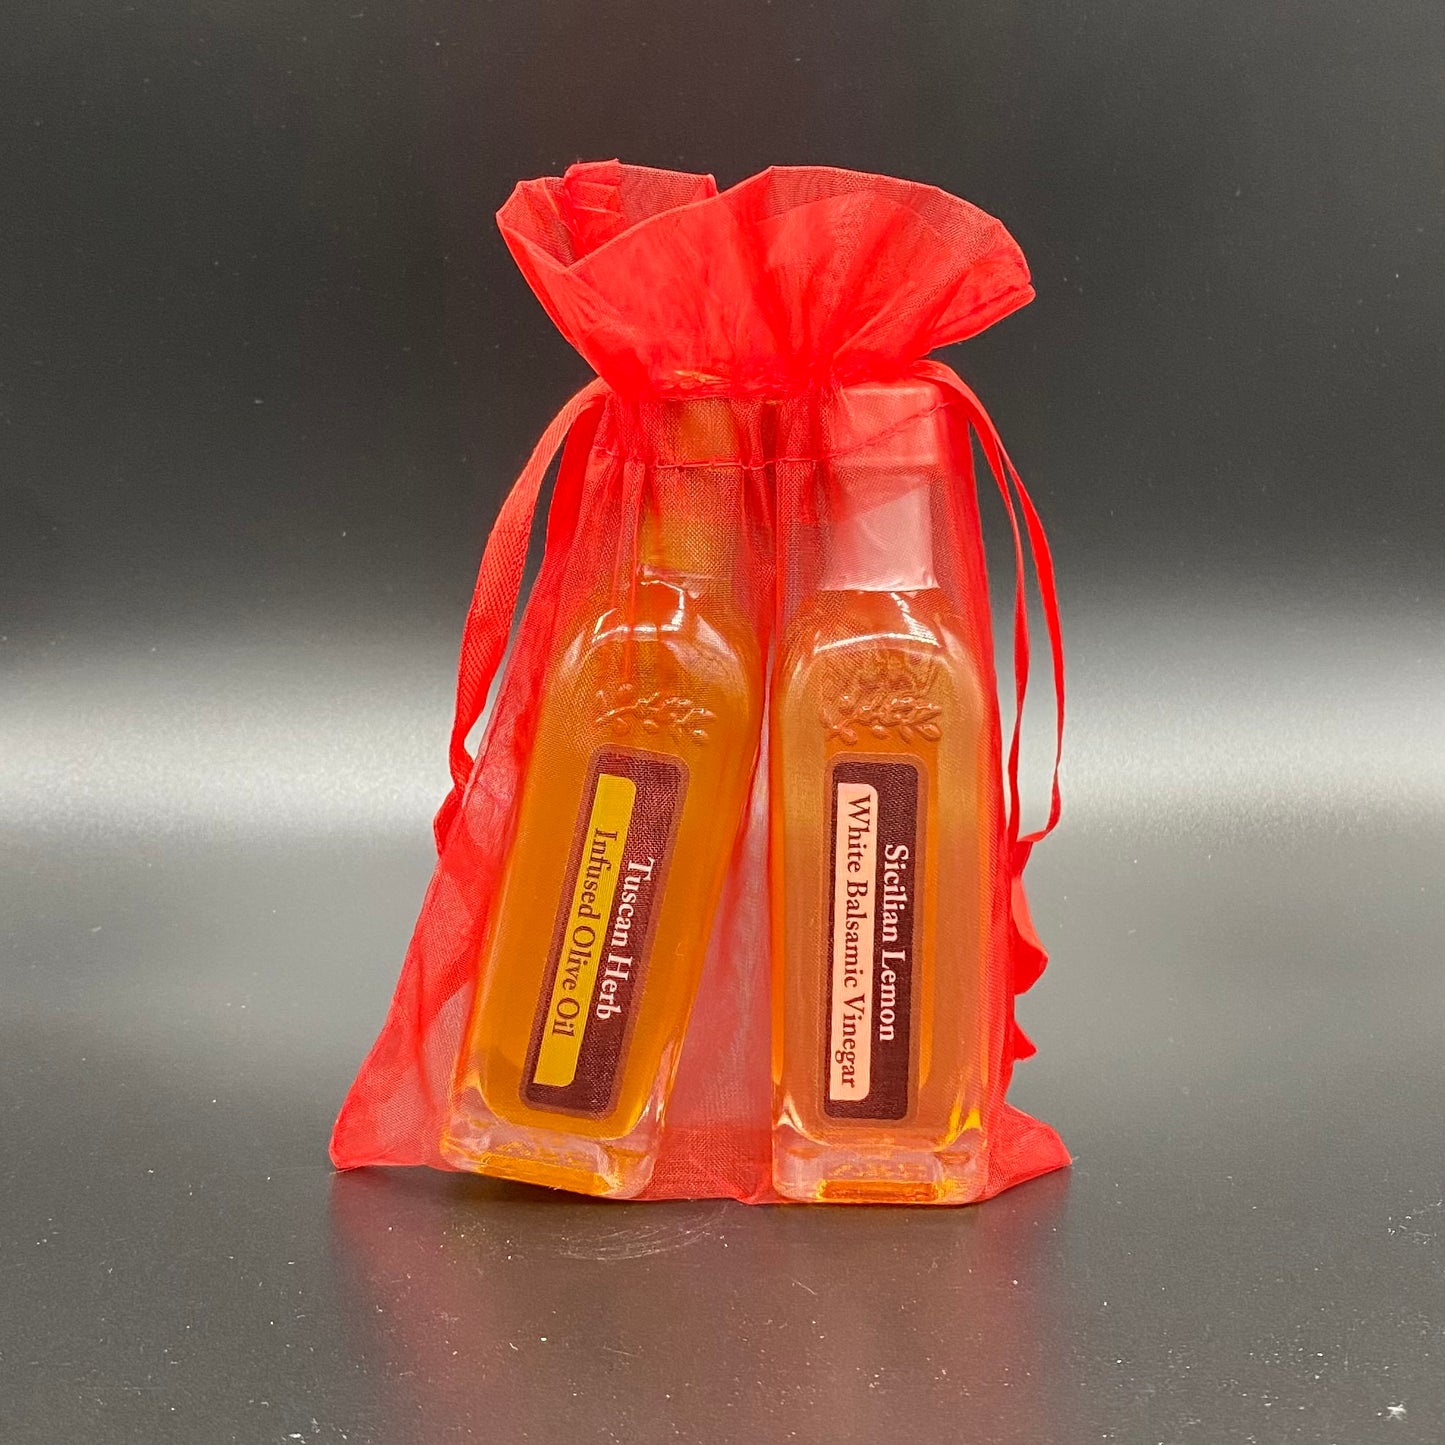 Oil and Vinegar Gift Packs